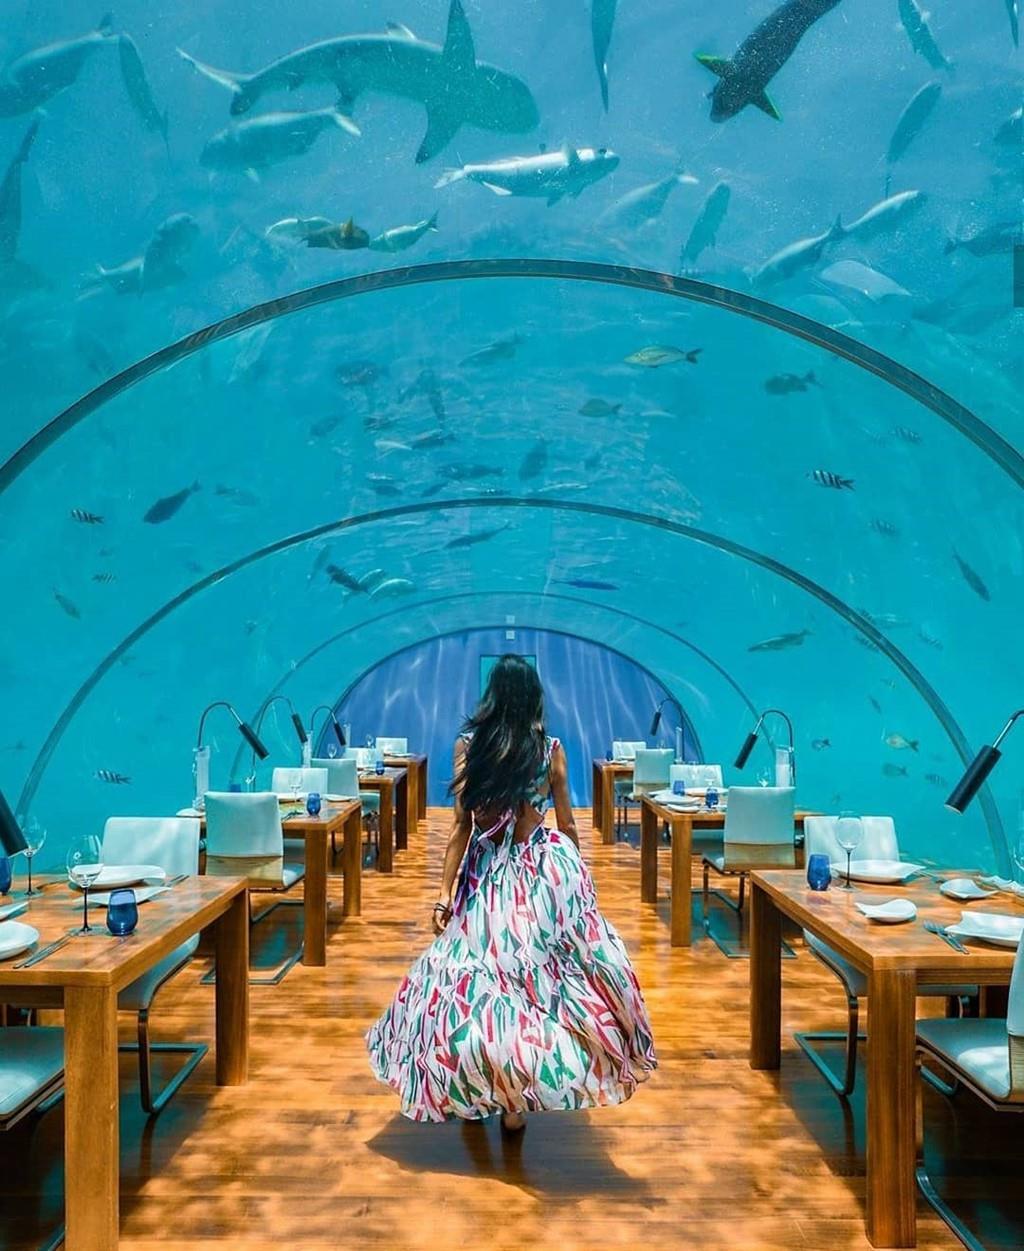 Maldives - “Cách thiên đường chỉ một bước chân”